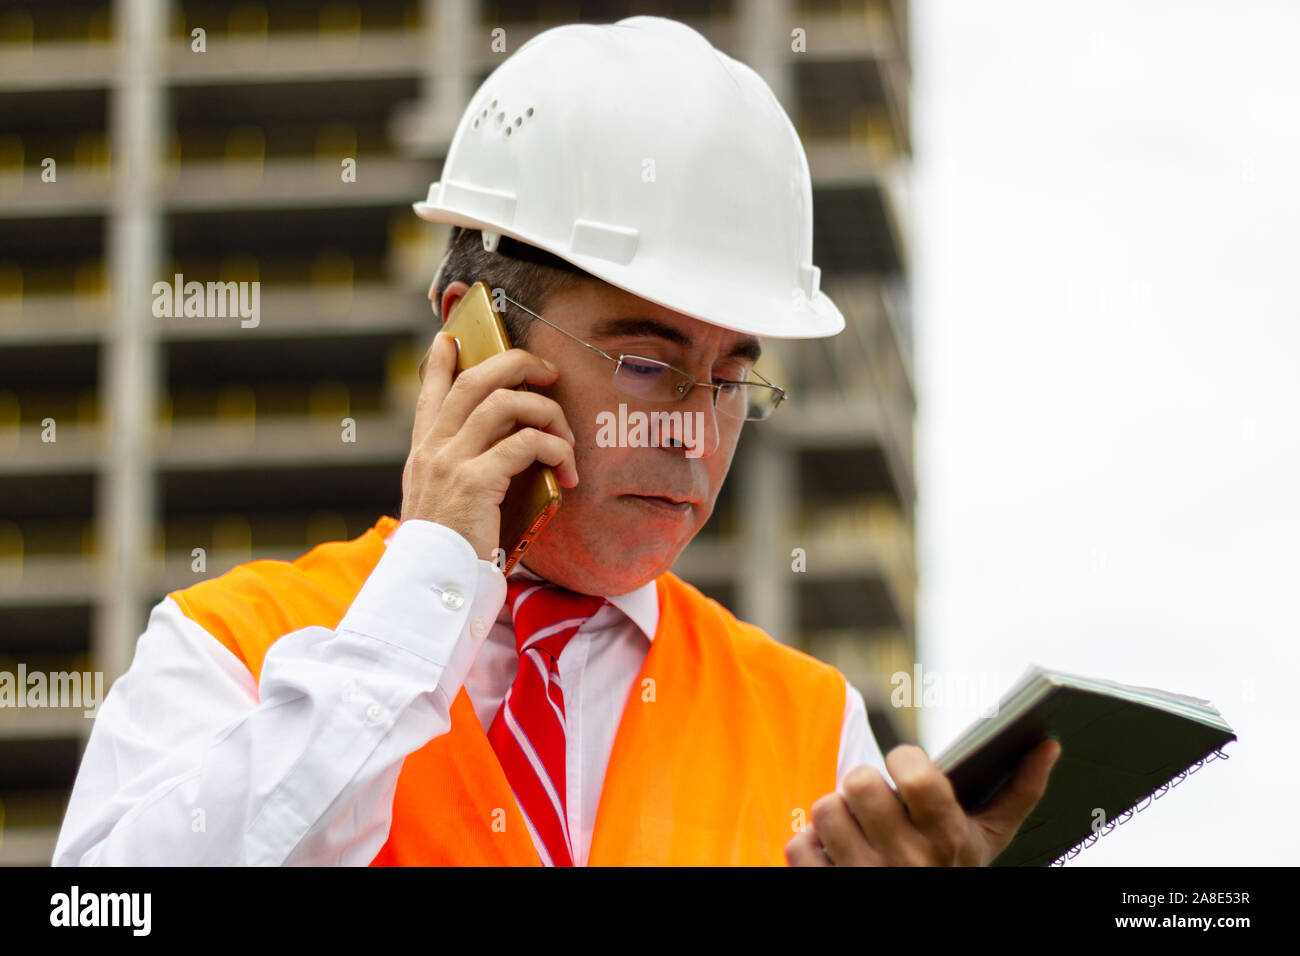 Ingénieur de construction l'homme à chemise et cravate avec casque de sécurité et gilet travaille at construction site, parler téléphone. Concept de personnes travaillant dans l'industrie Banque D'Images